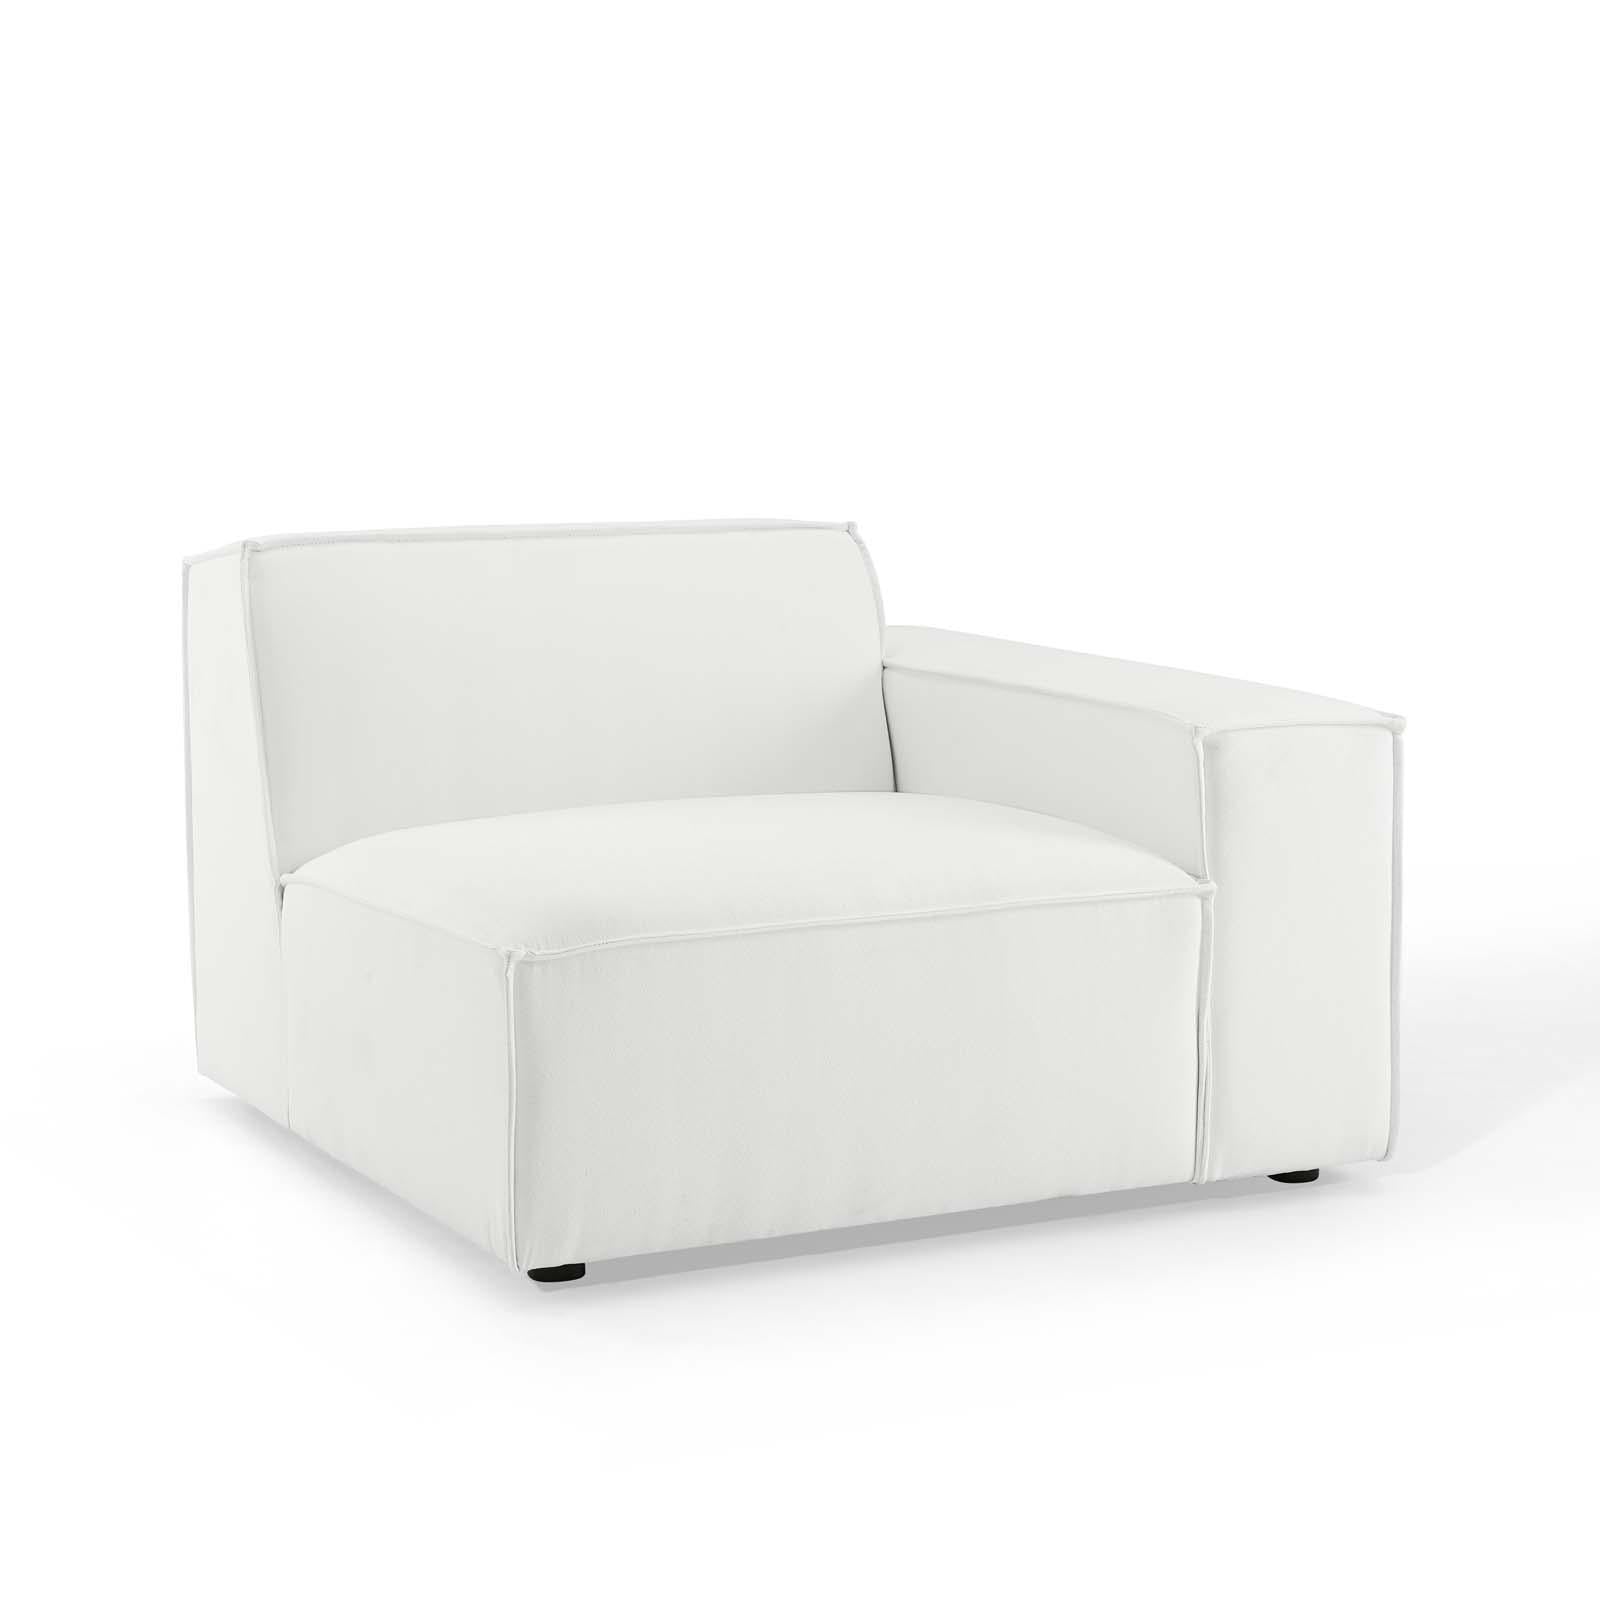 Modway Furniture Modern Restore 5-Piece Sectional Sofa - EEI-4117